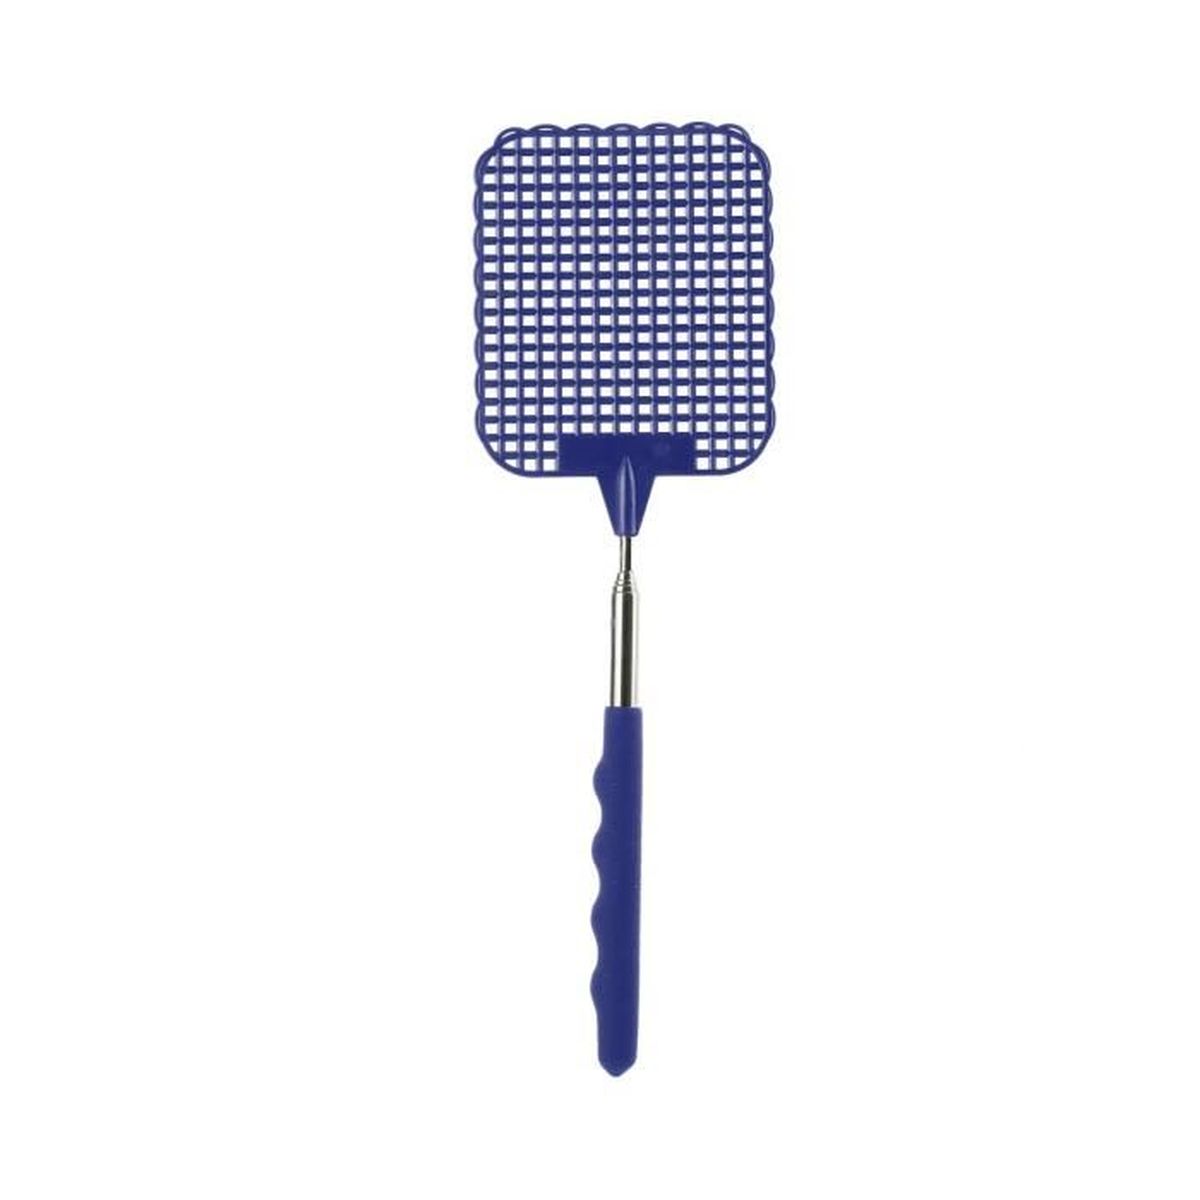 Tapette télescopique bleu droguerie insecte gadget de 26 cm à 72 cm 